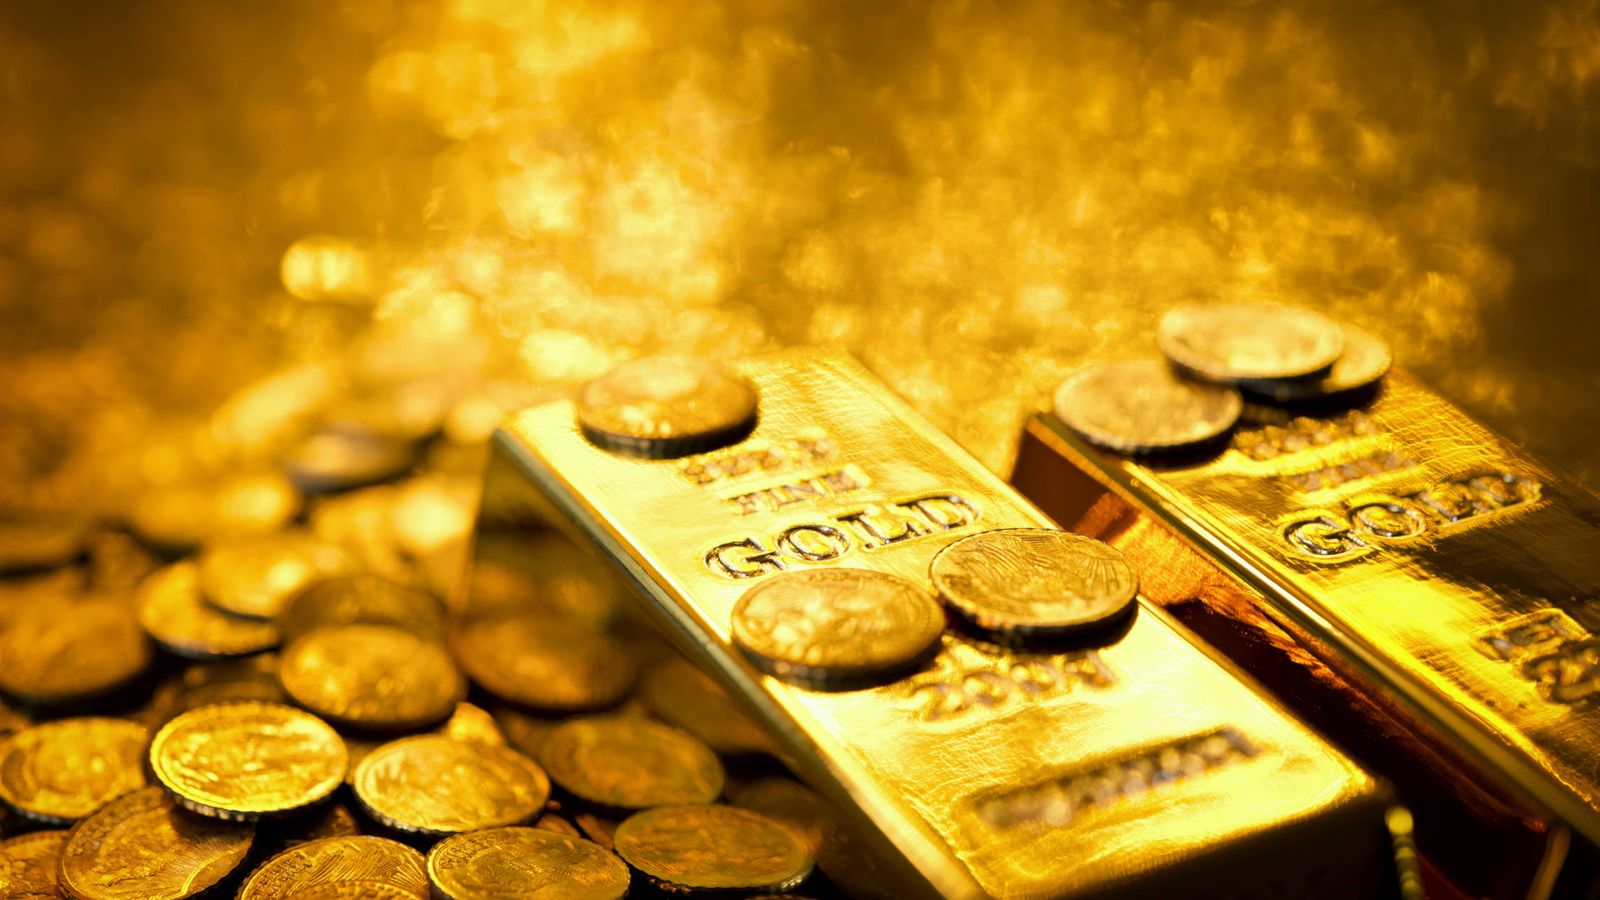 Foto: La asombrosa subida del precio del metal con el estallido de la crisis ha transformado el oro en algo más que un valor exclusivo para inversores con una mentalidad conservadora. (iStock)